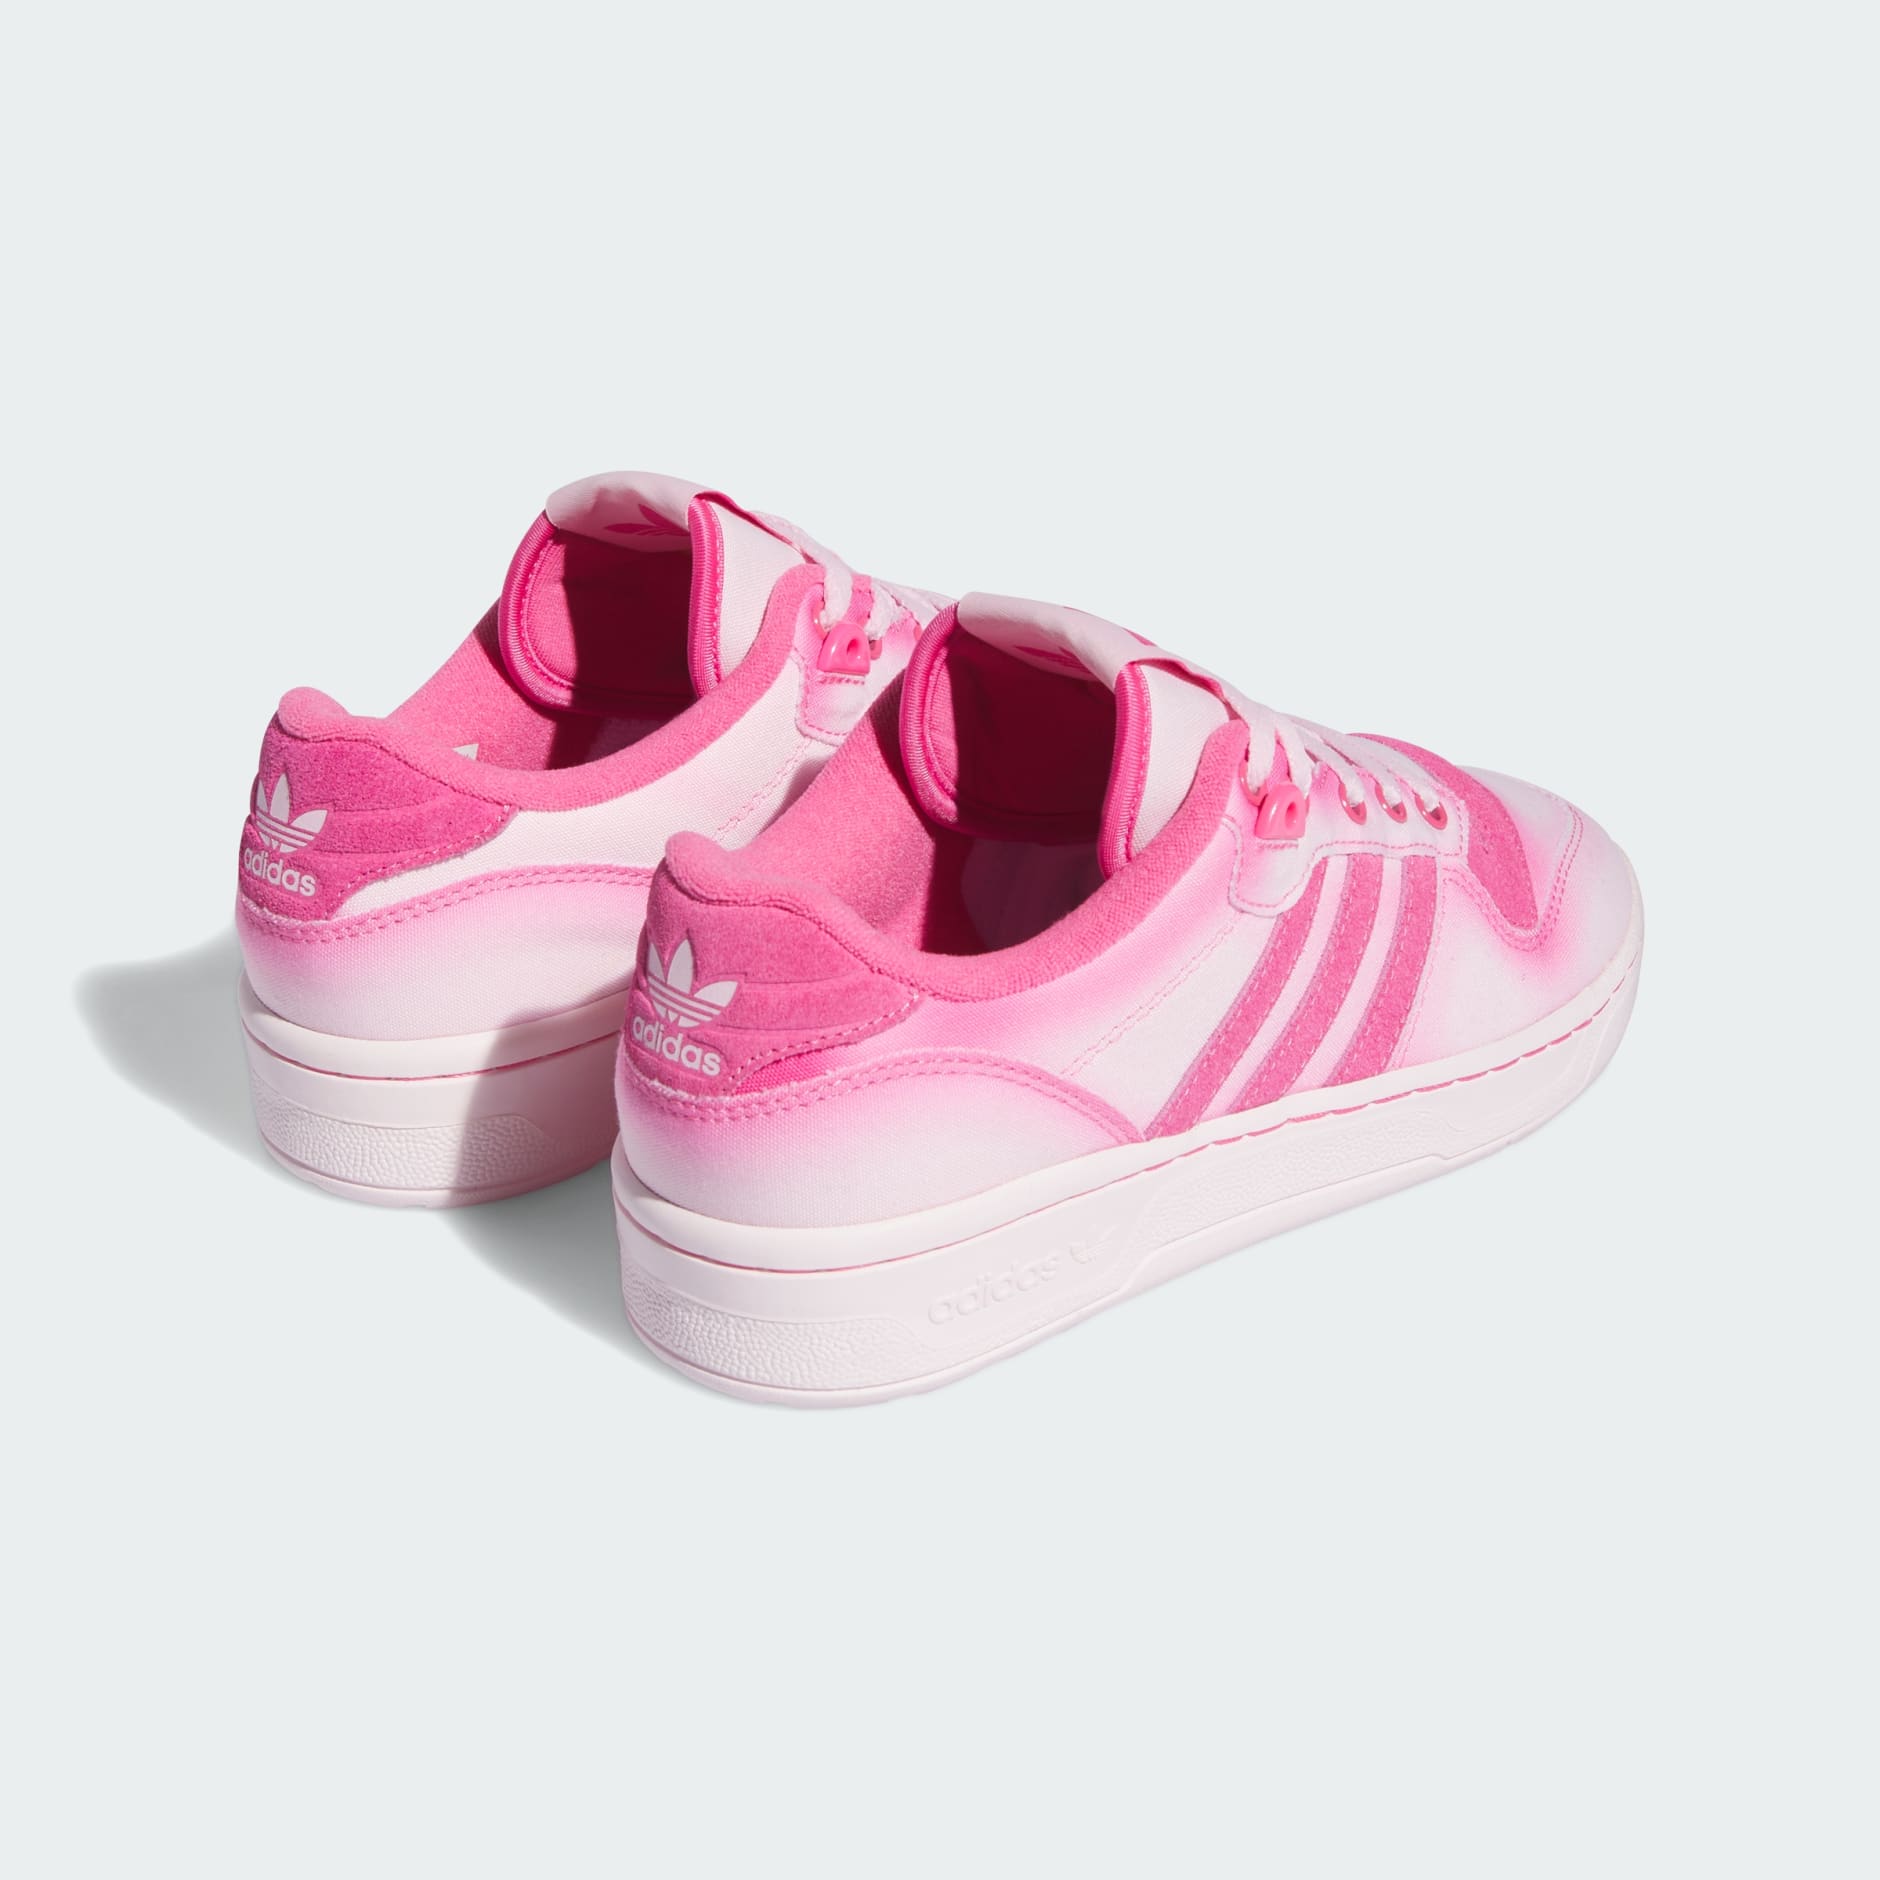 Women's Shoes - Rivalry Low Shoes - Pink | adidas Saudi Arabia